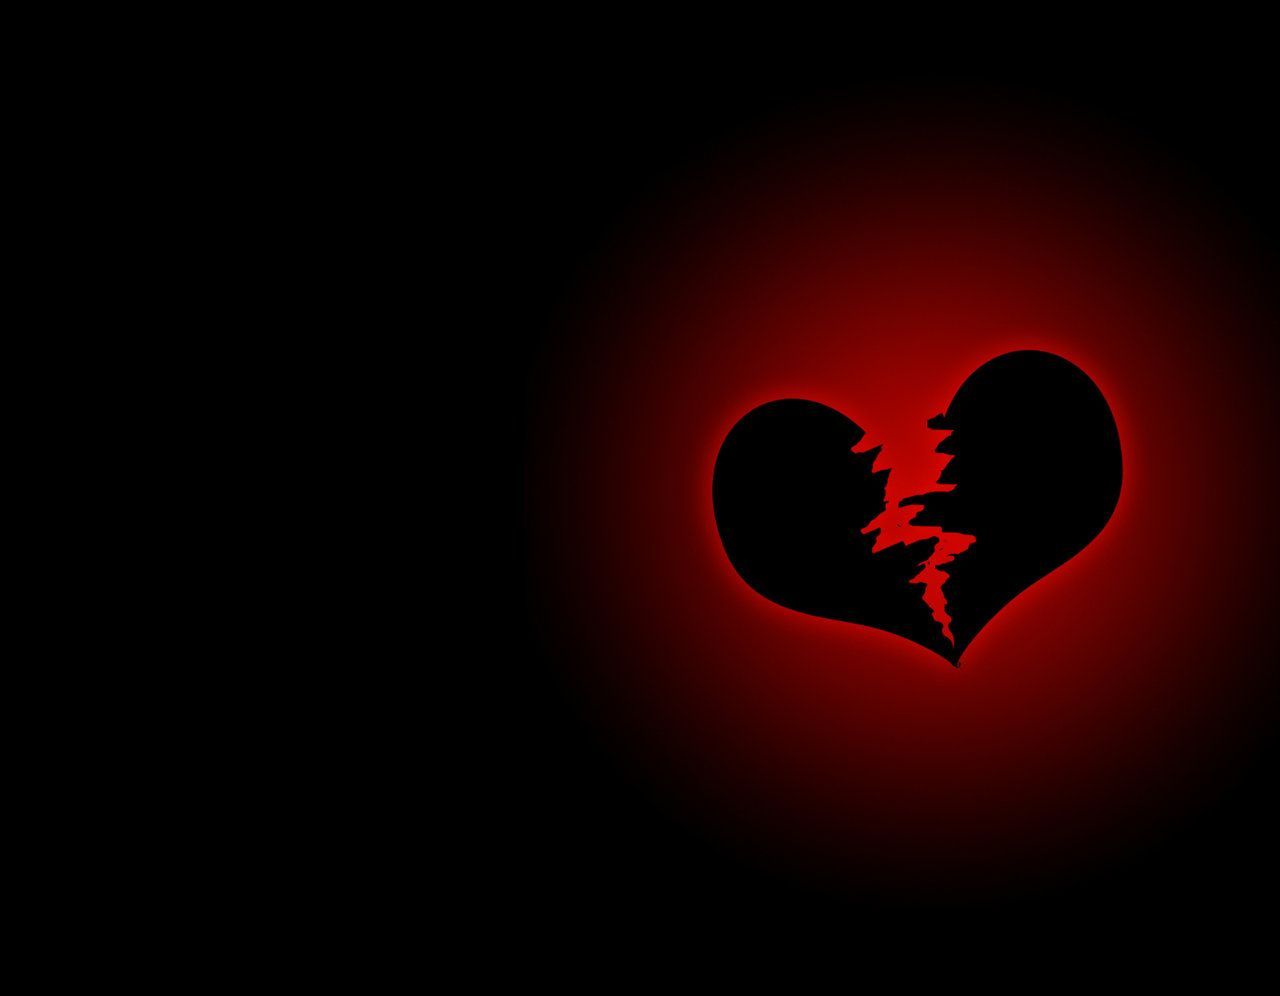 Broken Heart Anime Wallpaper Free Broken Heart Anime Background